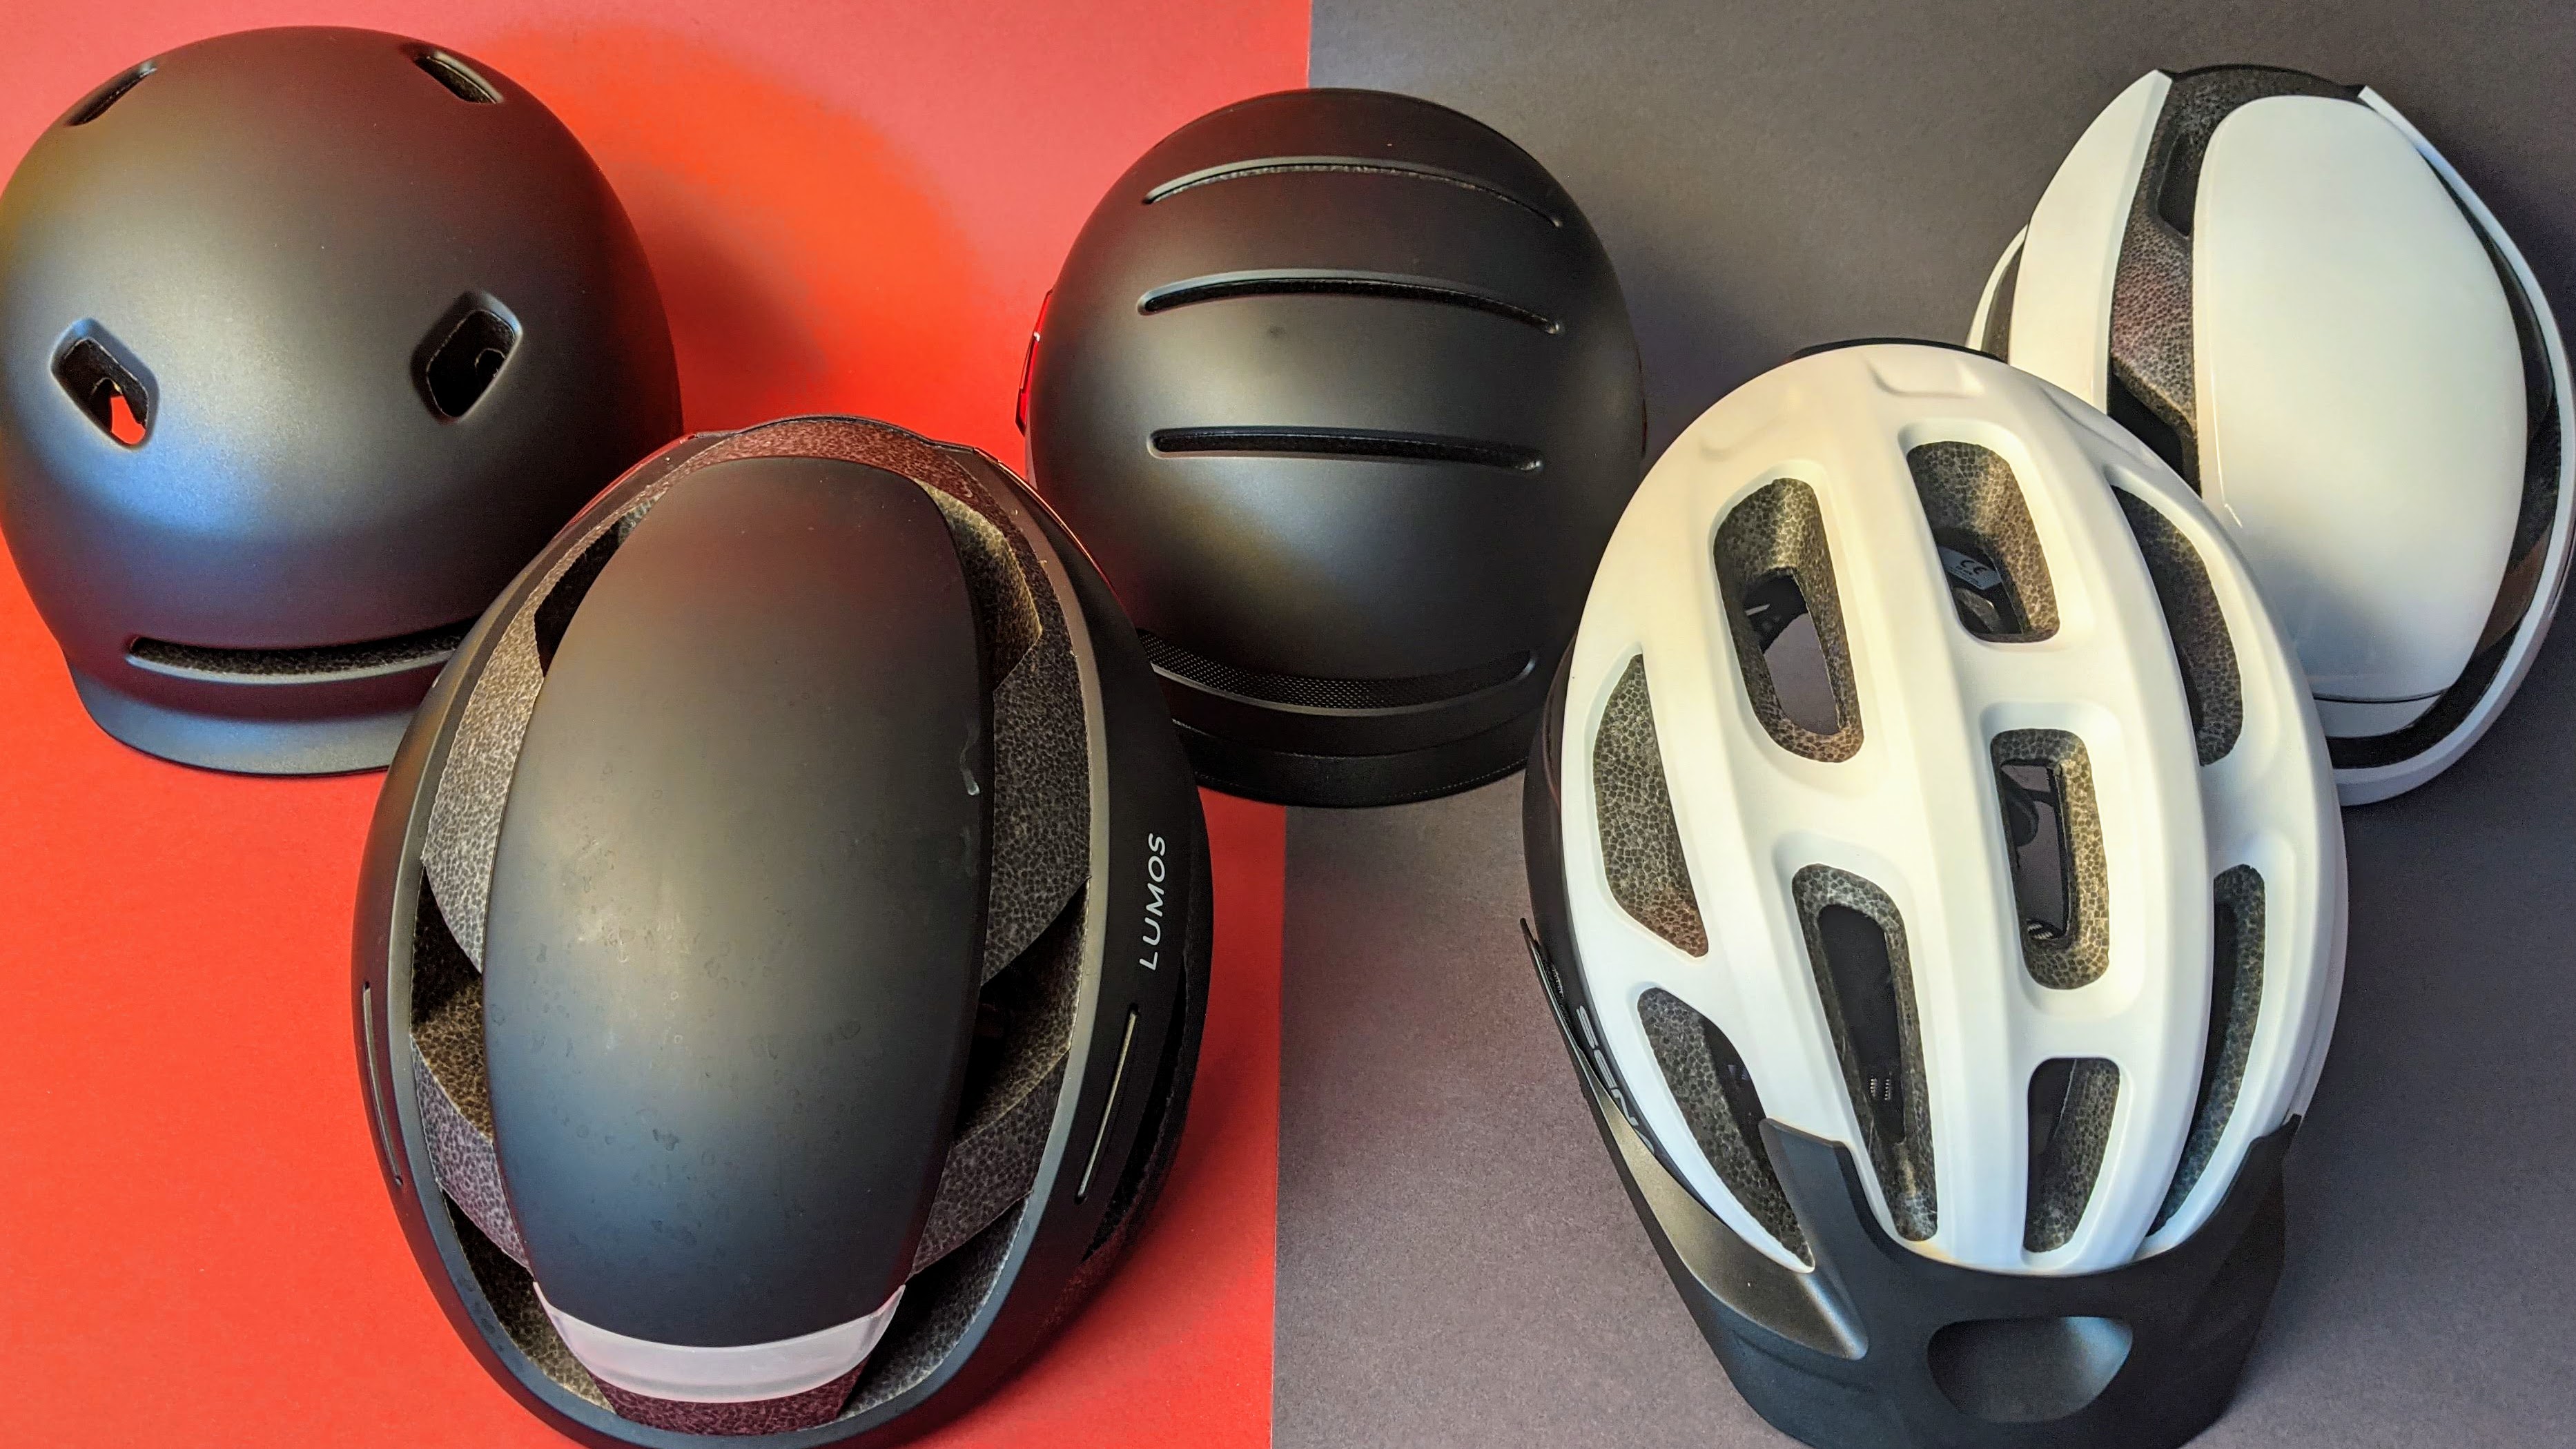 Smarte Fahrradhelme im Vergleich: Besser geschützt mit Airbag, Blinker,  Notruf | TechStage